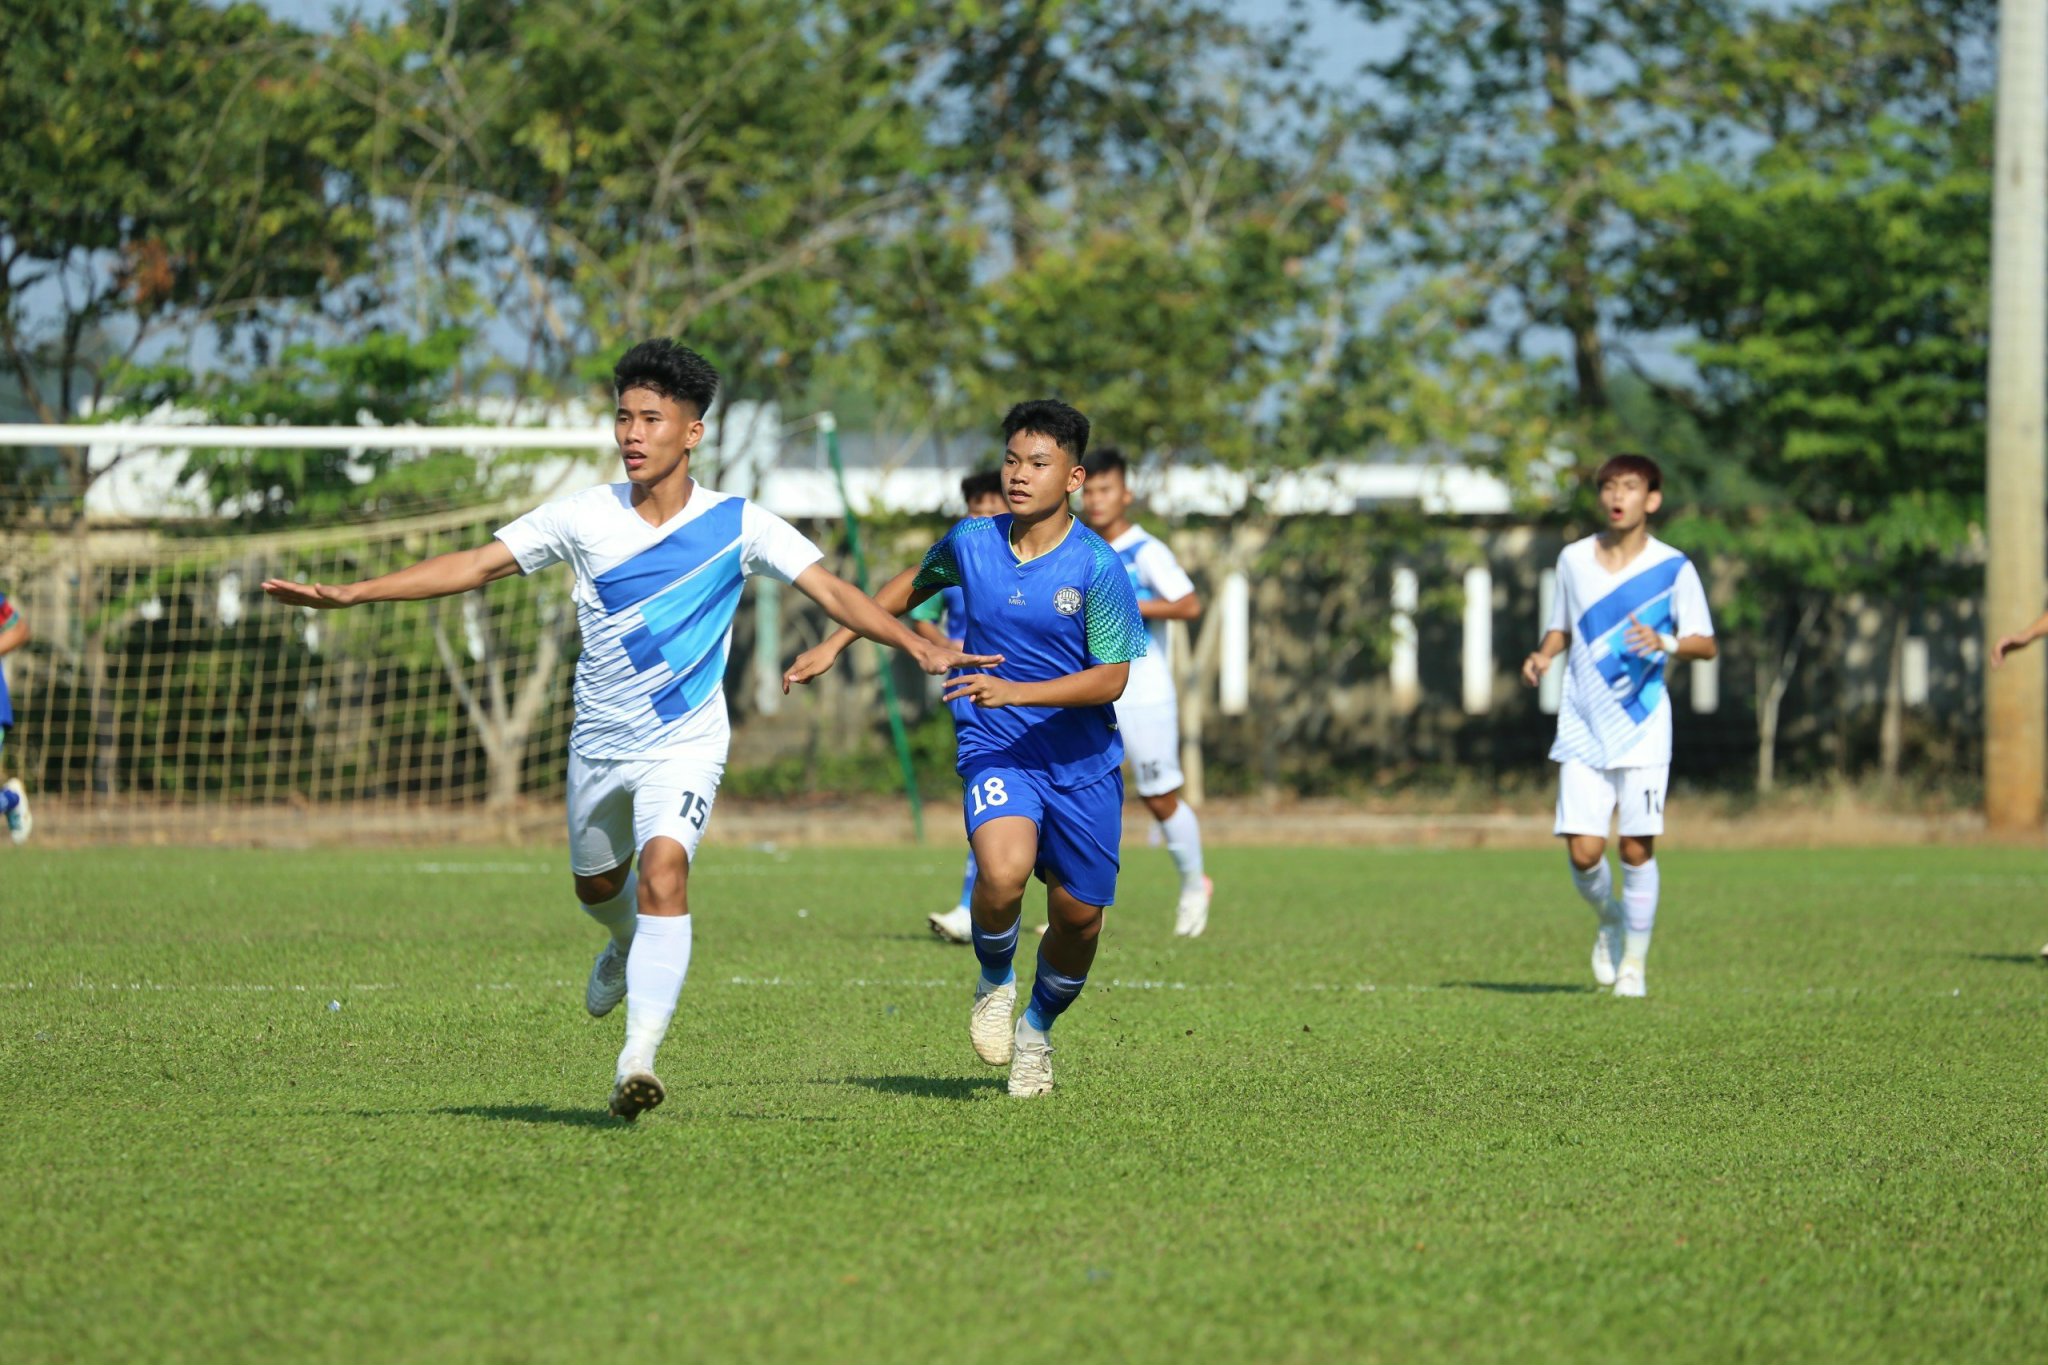 Cầu thủ Nguyễn Lê Quang Khôi, con trai của cựu danh thủ Nguyễn Quang Hải được triệu tập vào đội tuyển U17 Việt Nam.